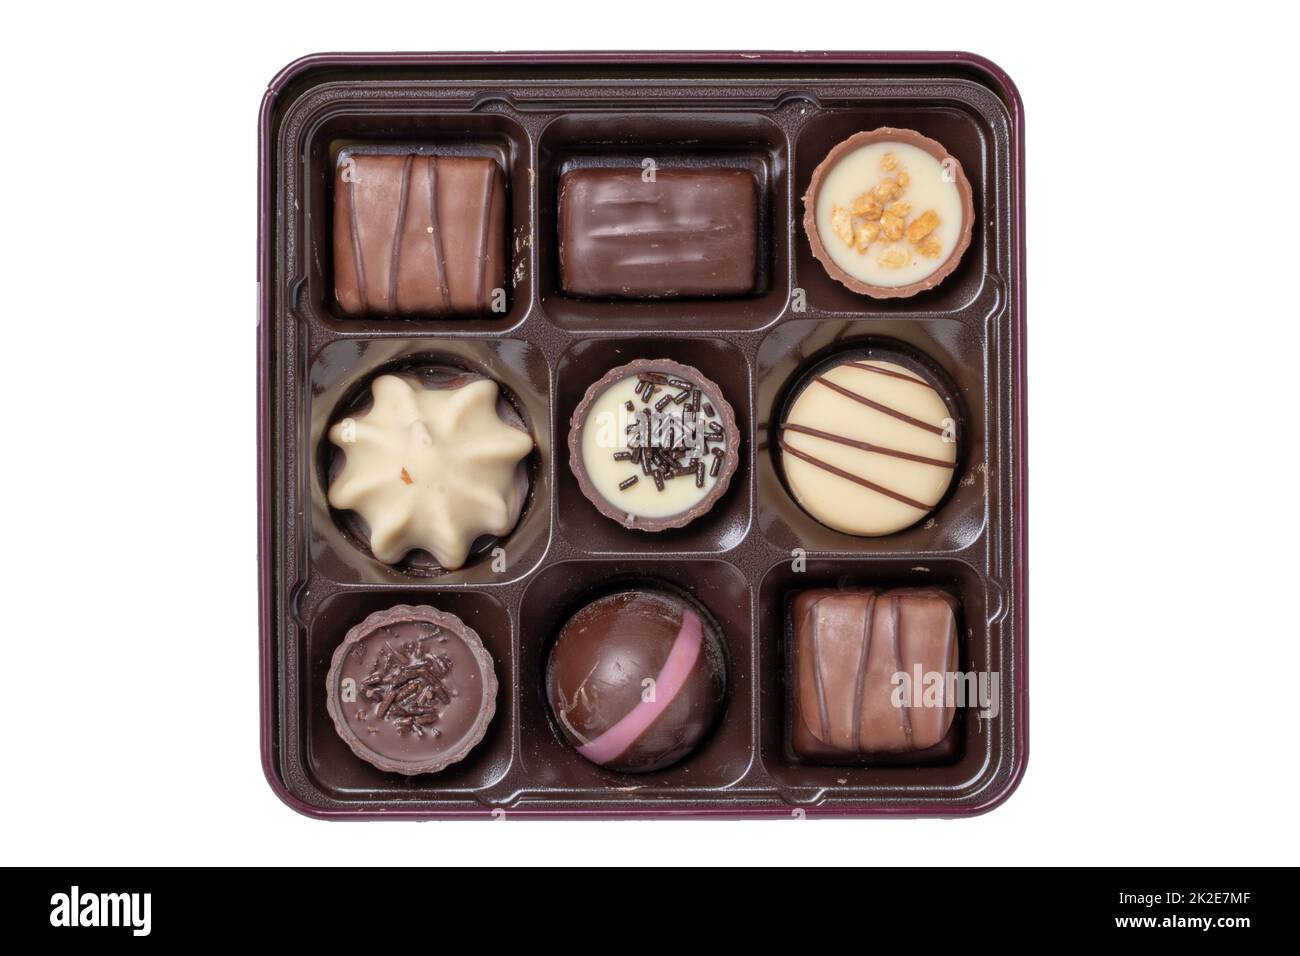 Primo piano di una scatola di caramelle al cioccolato in una bella scatola di plastica isolata su sfondo bianco. Regalo a sorpresa per San Valentino o altre occasioni di festa. Macro. Foto Stock